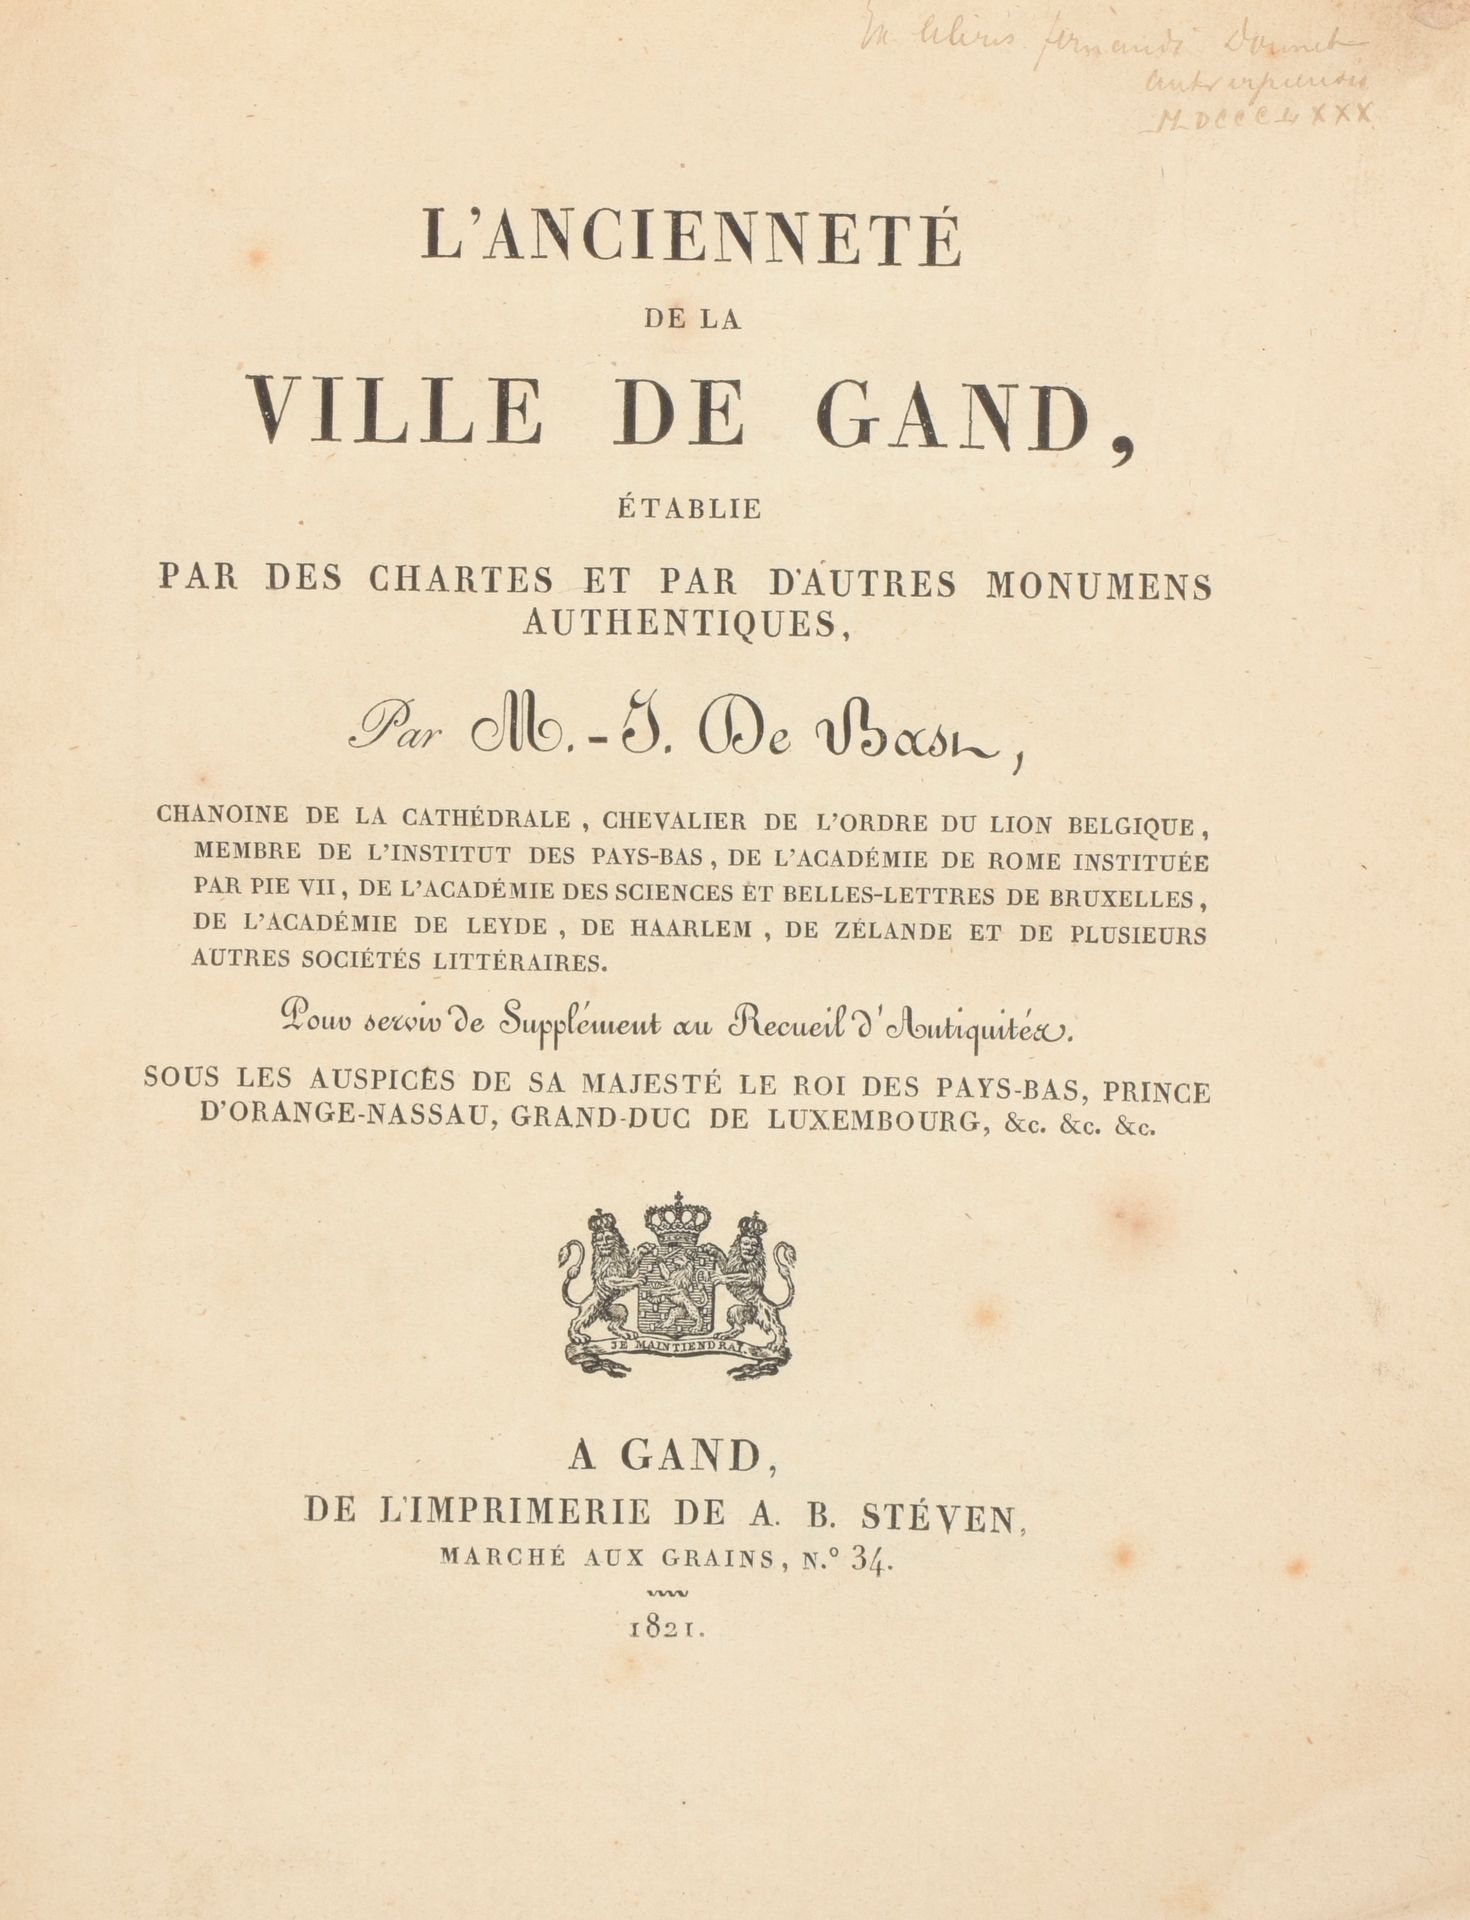 DE BAST, Martin Jean La antigüedad de la ciudad de Gante

Gante
A.B. Steven
1821&hellip;